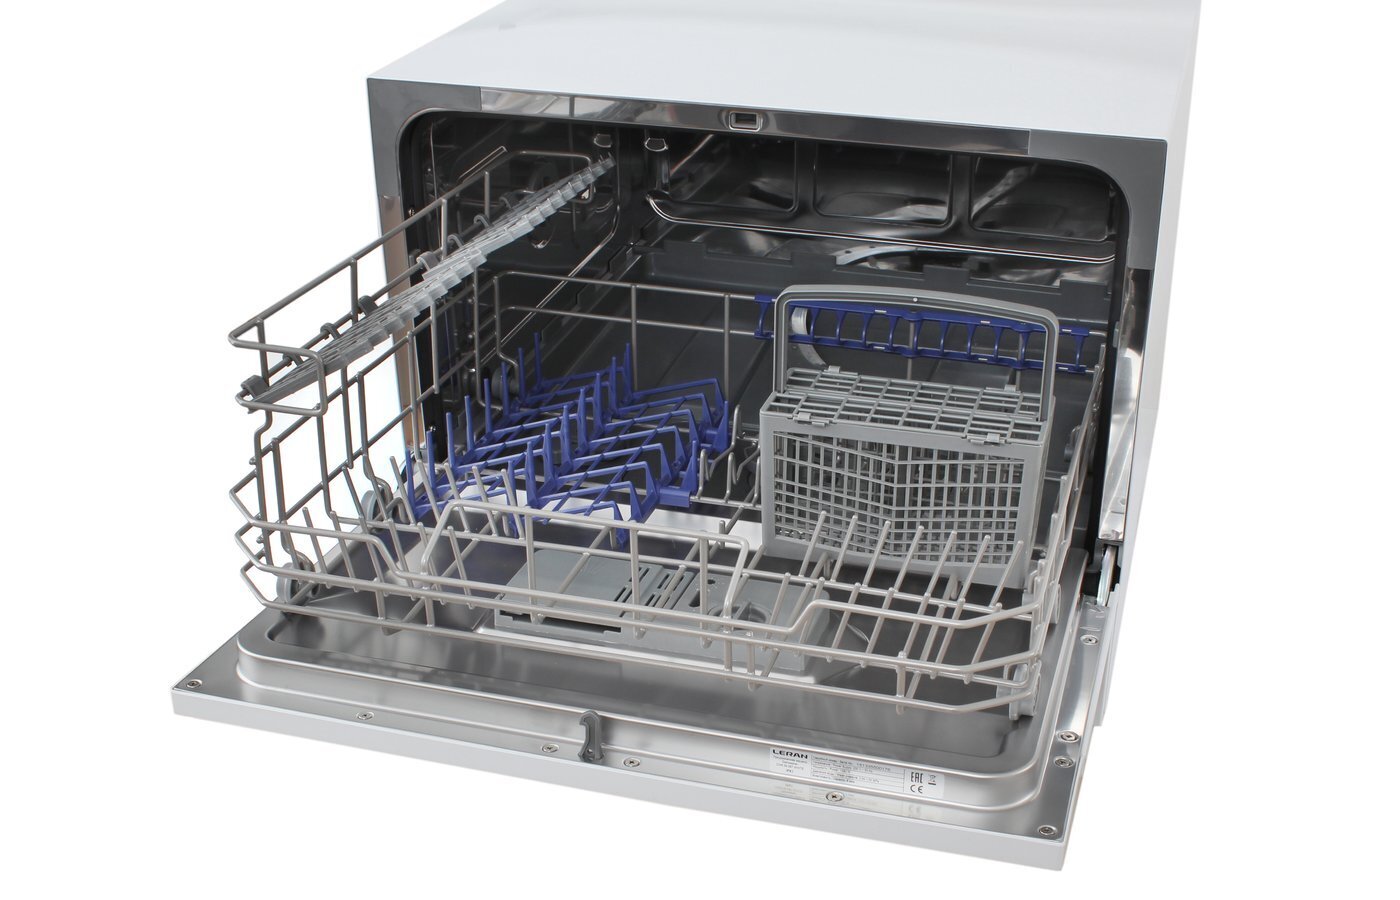 Купить посудомоечную симферополь. Посудомоечная машина Leran CDW 55-067 White. Посудомоечная машина настольная Leran CDW 55-067 White. Посудомоечная машина Leran 55-067. Леран посудомоечная машина настольная.